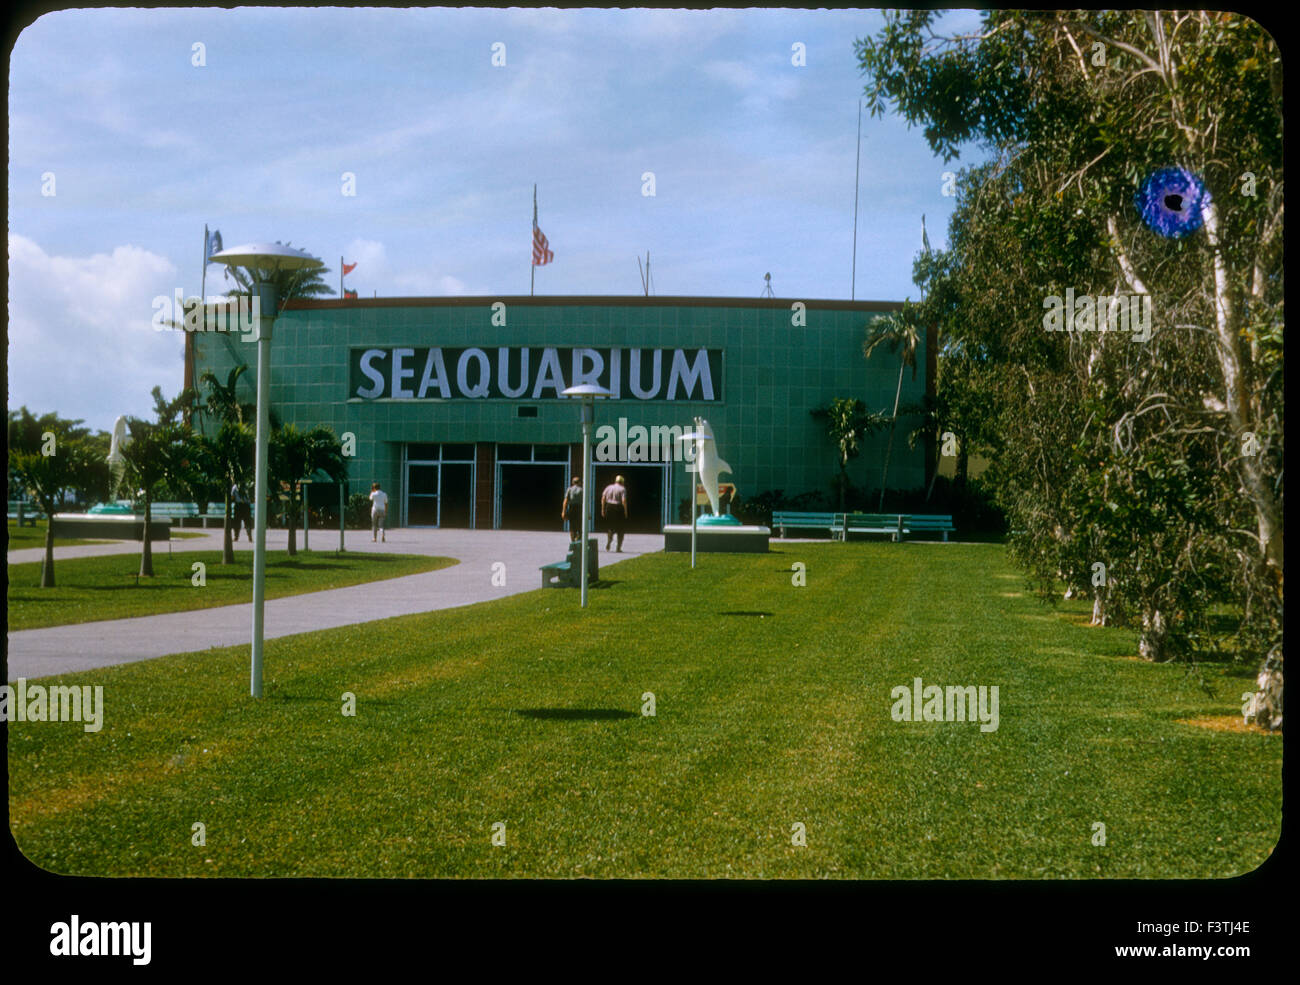 Seaquarium esterno. 1960s. Miami Seaquarium è 38 acri (15 ha) oceanarium situato sull isola di Virginia Key nella Baia di Biscayne, Miami-Dade County, Florida, Stati Uniti e si trova vicino al centro cittadino di Miami. Fondata nel 1955, è uno dei più antichi oceanariums negli Stati Uniti. Foto Stock